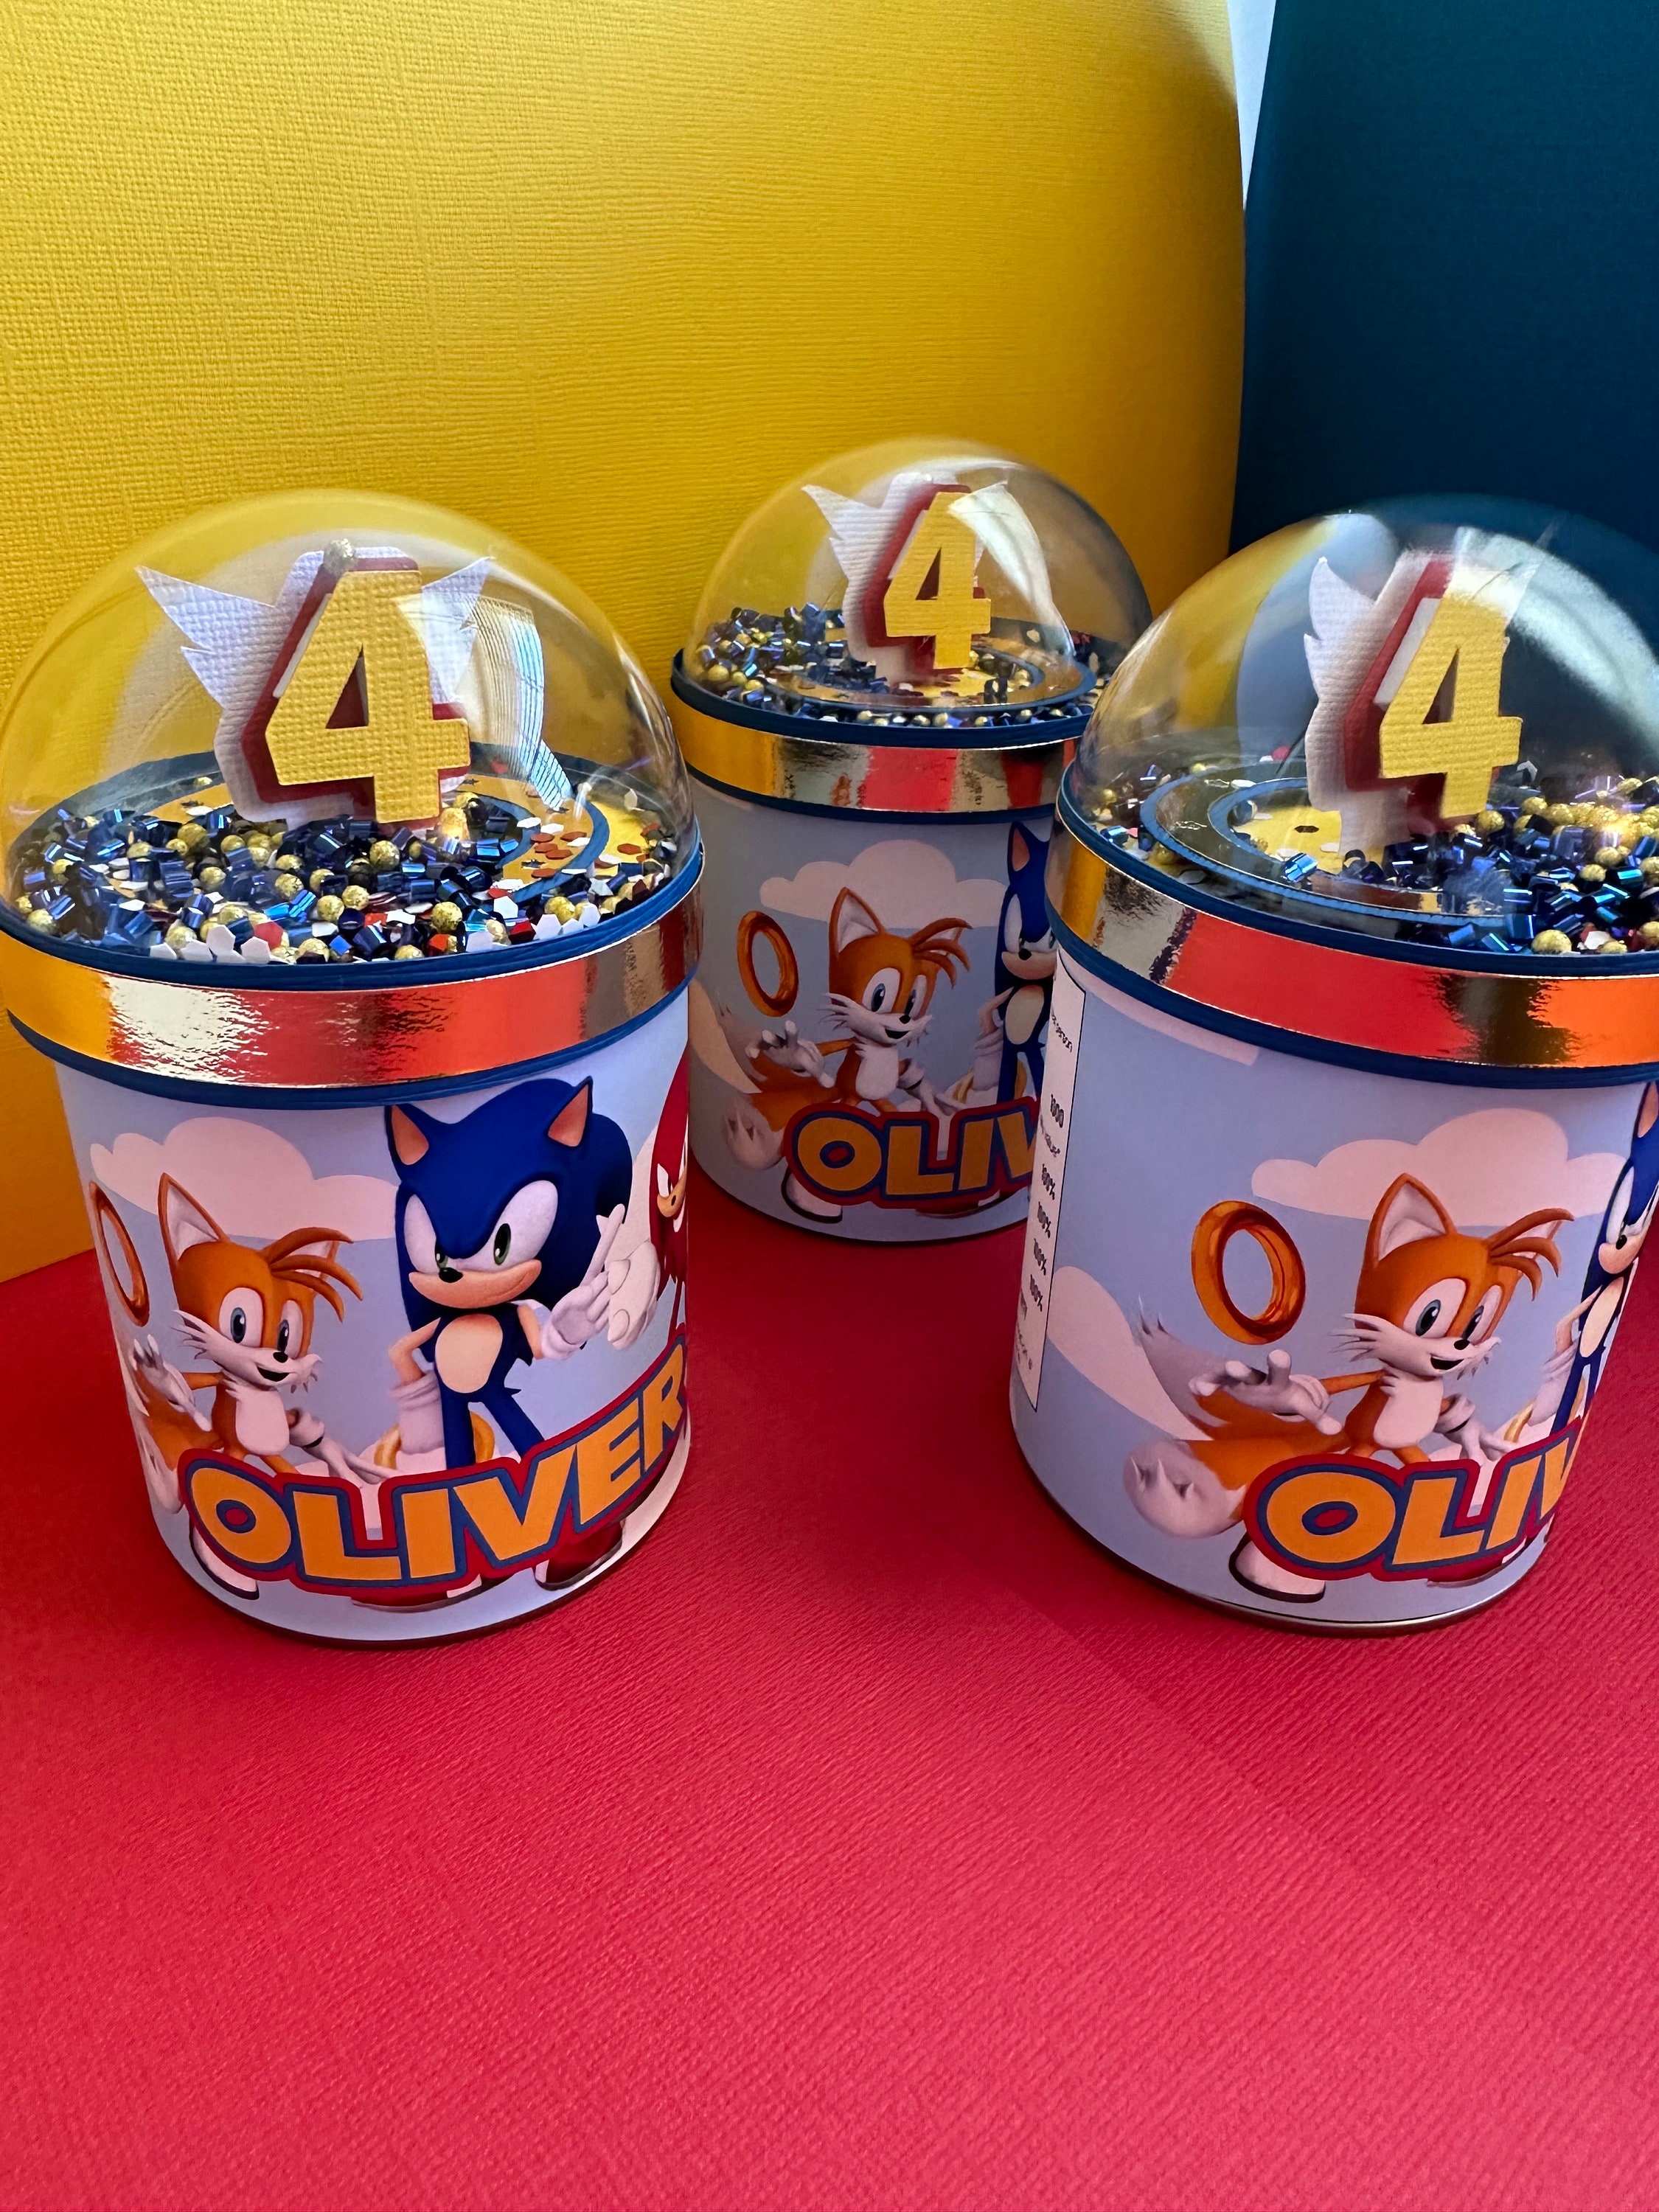 Bolsa Cono Chuches de Sonic (10)✔️ por sólo 1,35 €. Envío en 24h. Tienda  Online. . ✓. Artículos de decoración para  Fiestas.